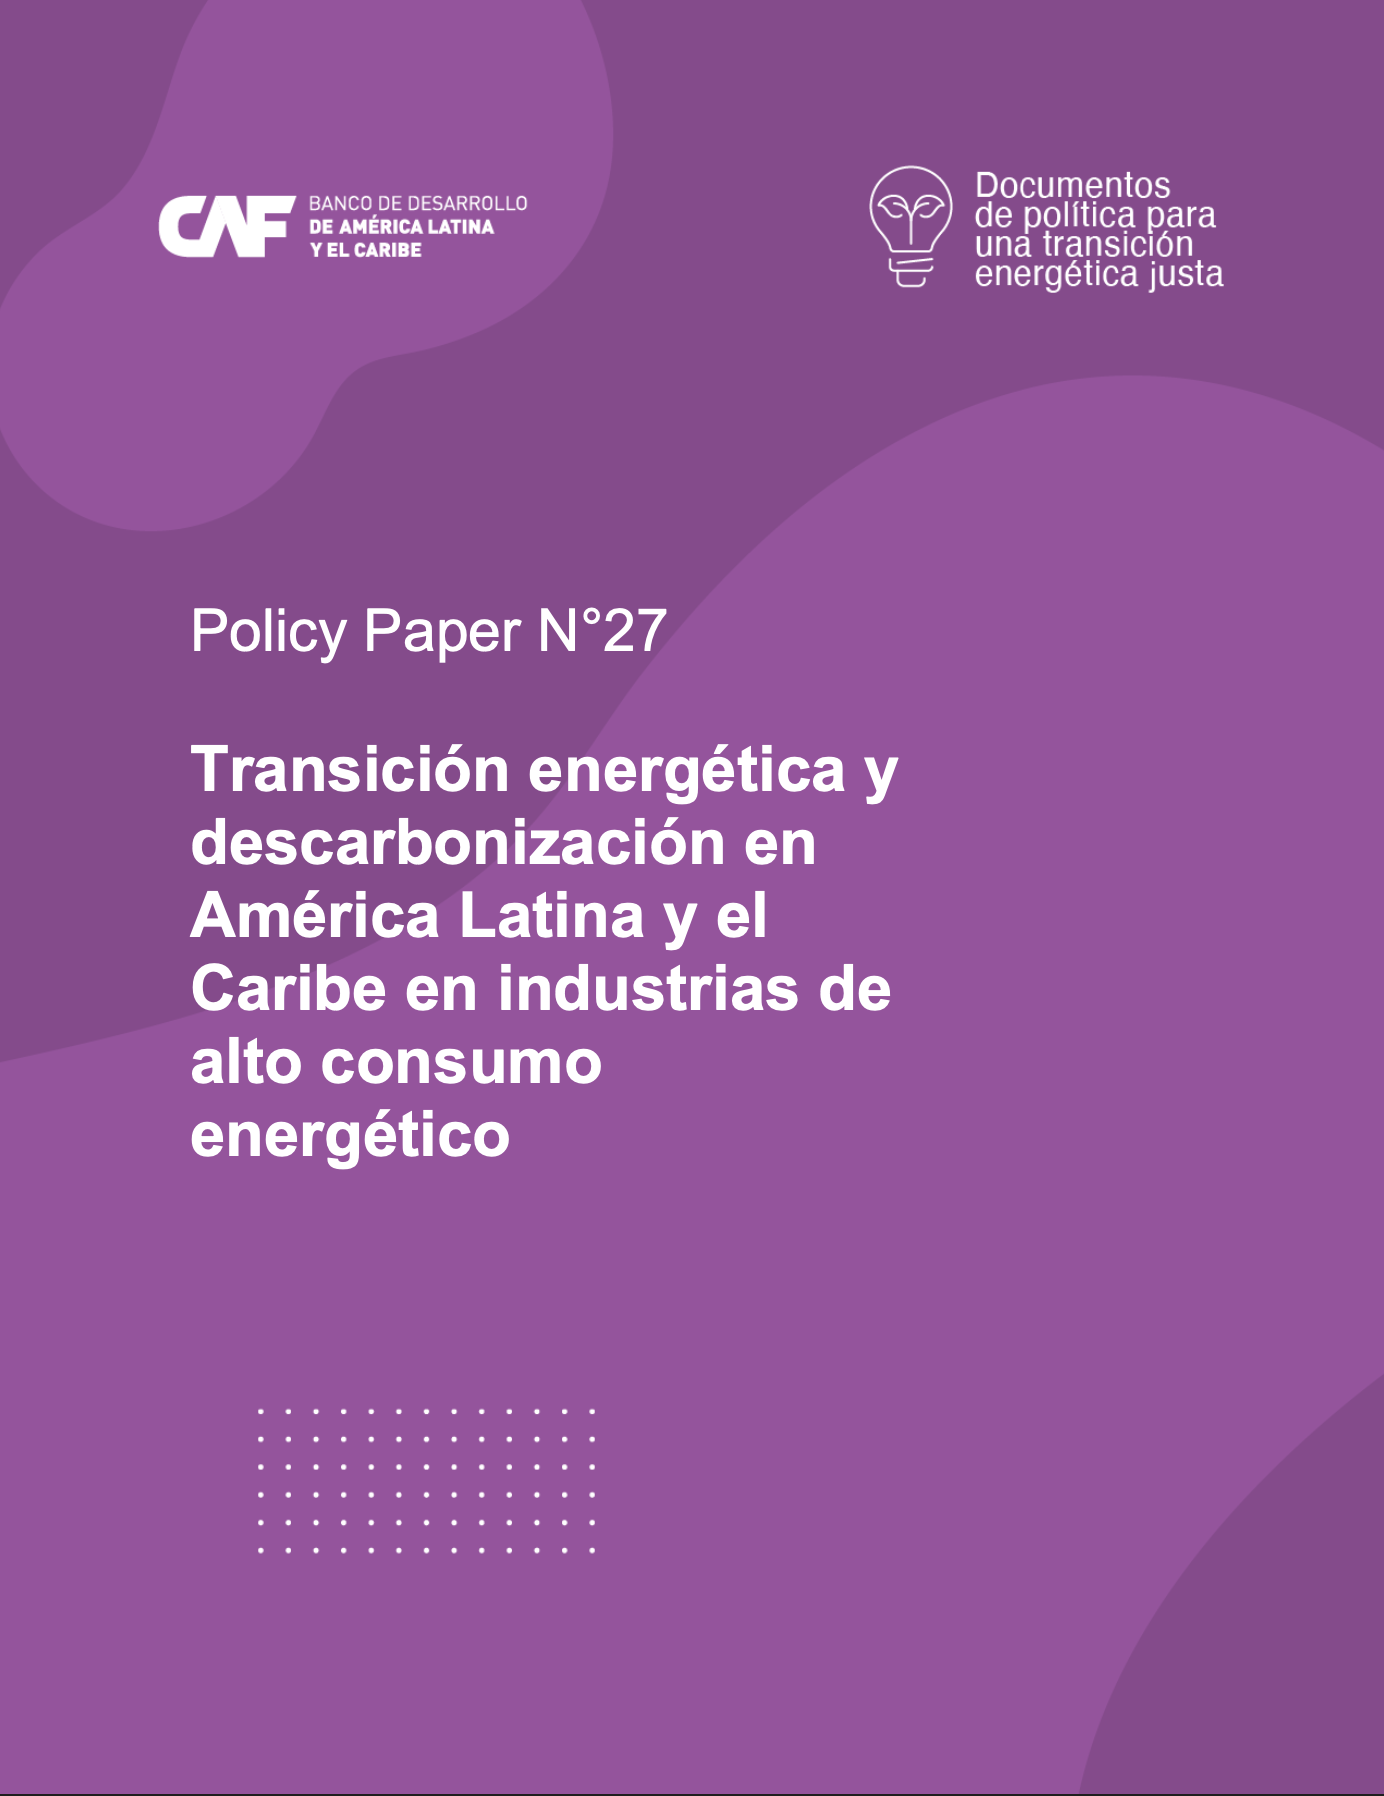 Transición energética y descarbonización en América Latina y el Caribe en industrias de alto consumo energético